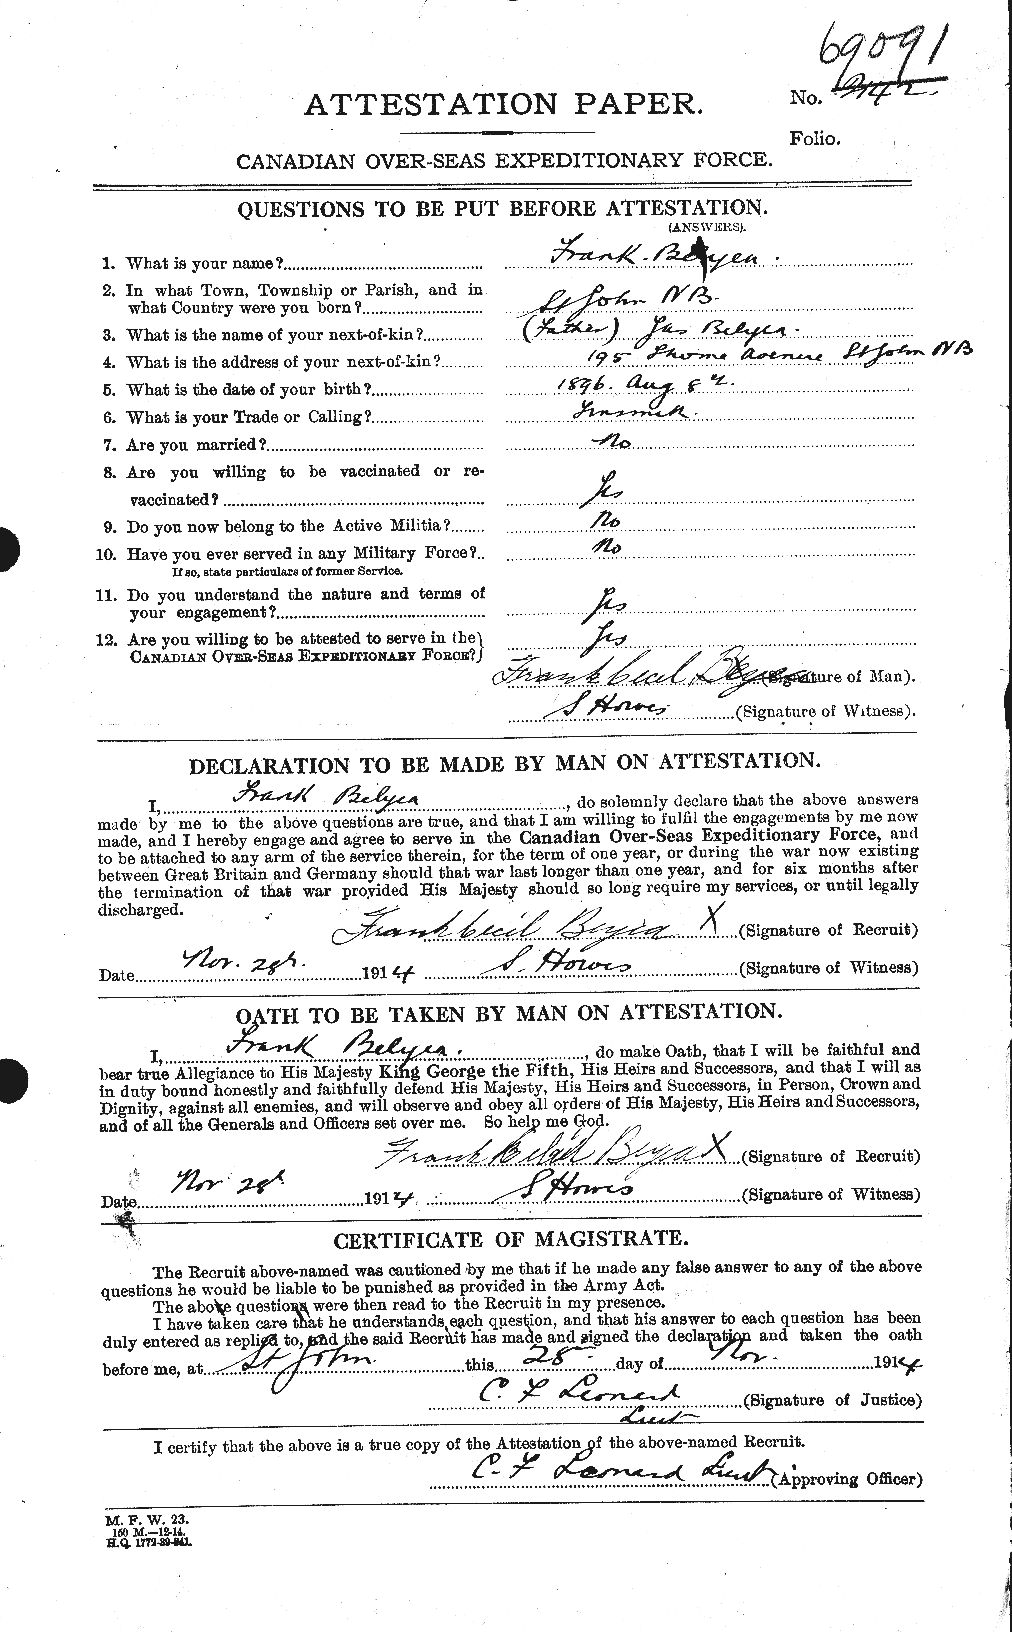 Dossiers du Personnel de la Première Guerre mondiale - CEC 237502a